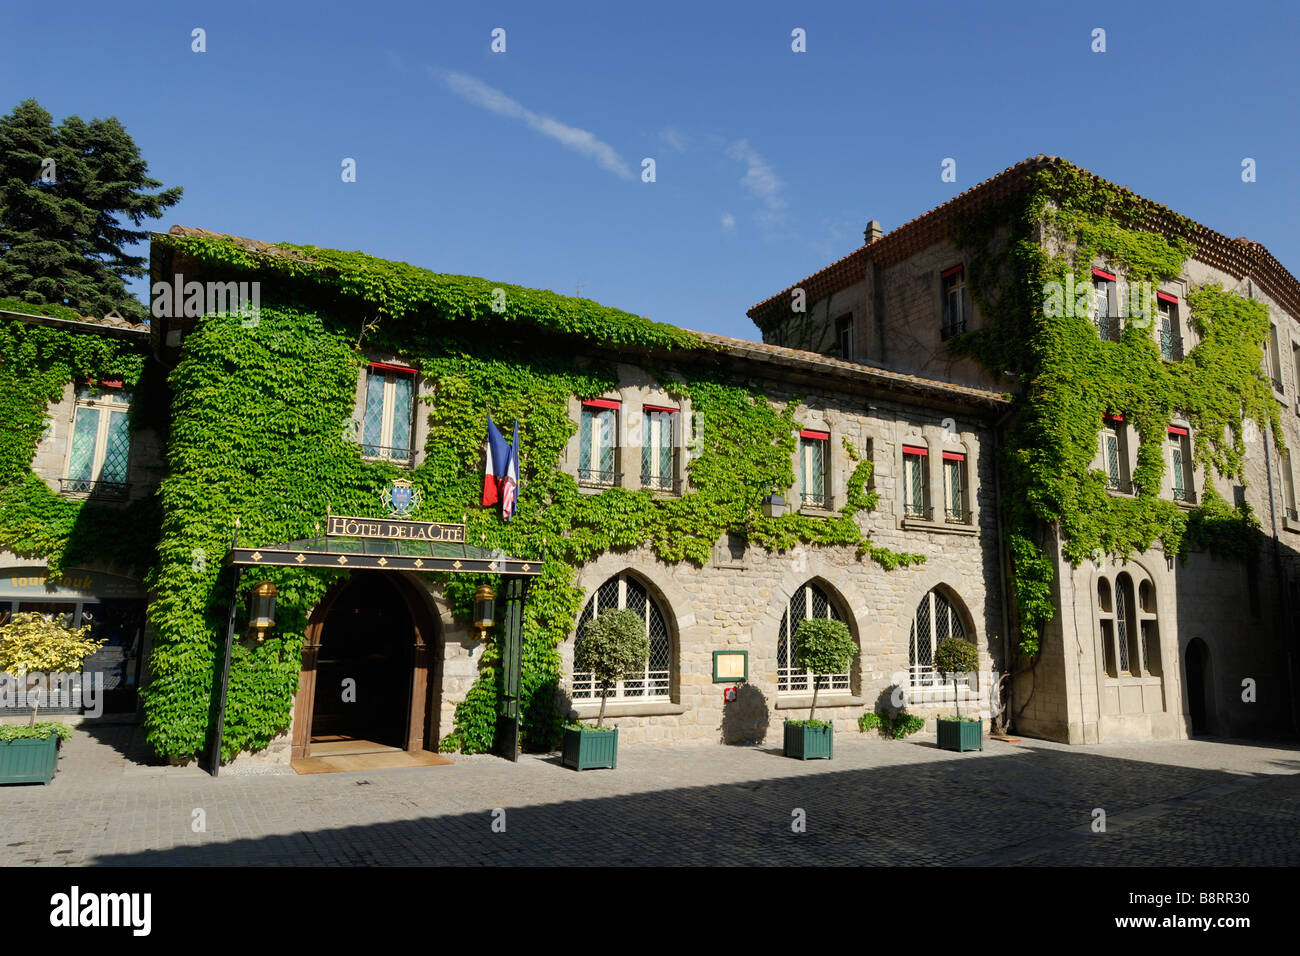 Carcassonne France Hotel de la Cité inside the medieval old town Stock Photo